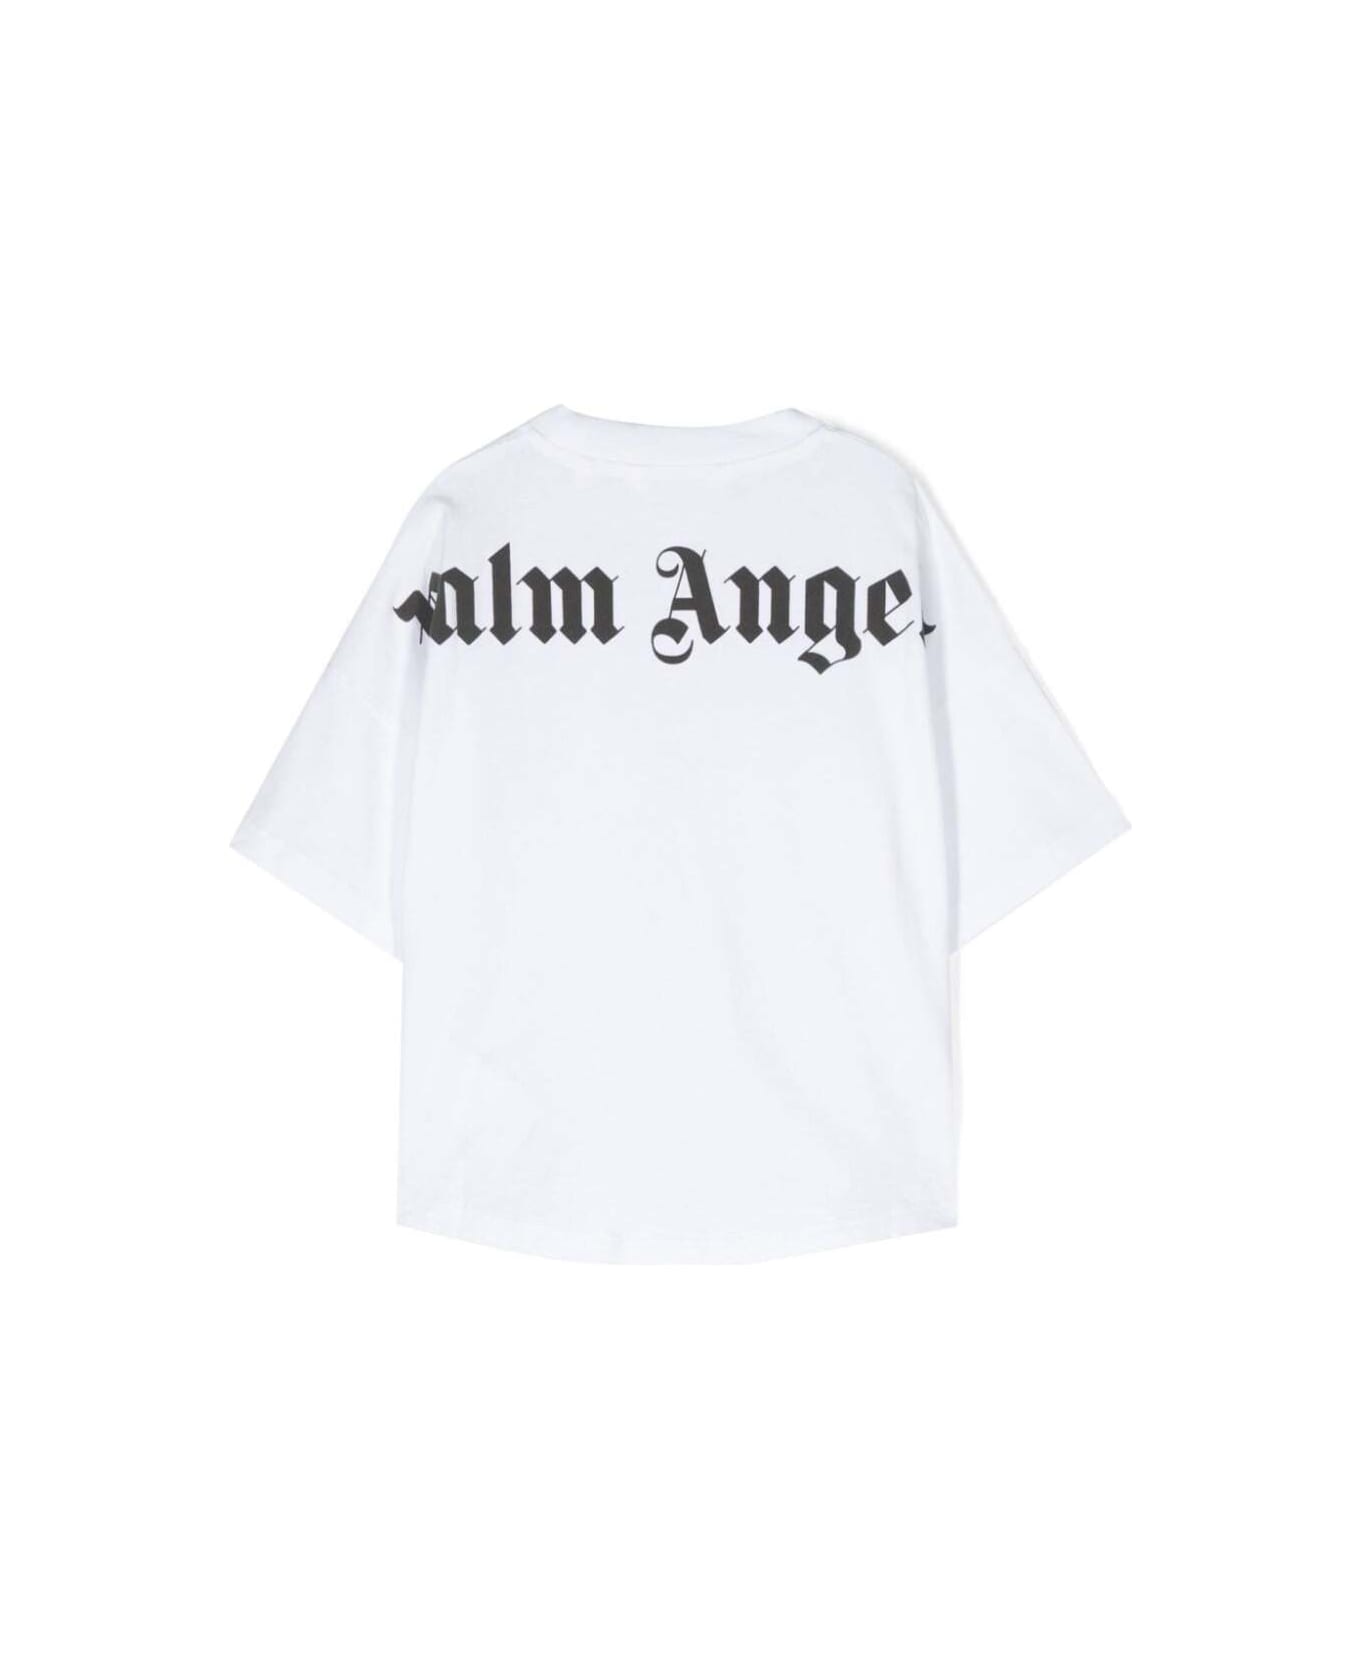 Palm Angels Classic Overlogo T-shirt S/s White Black - White